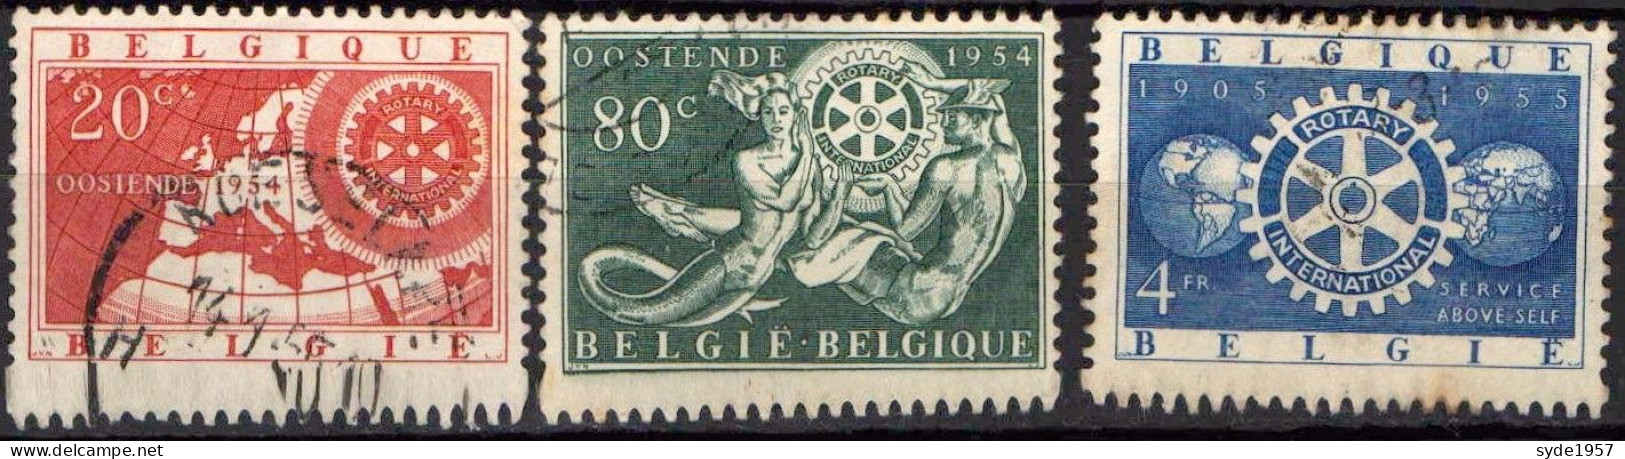 Belgique 1954 50ans Rotary International COB952 à 954 (complet)- Oblitérés - Oblitérés